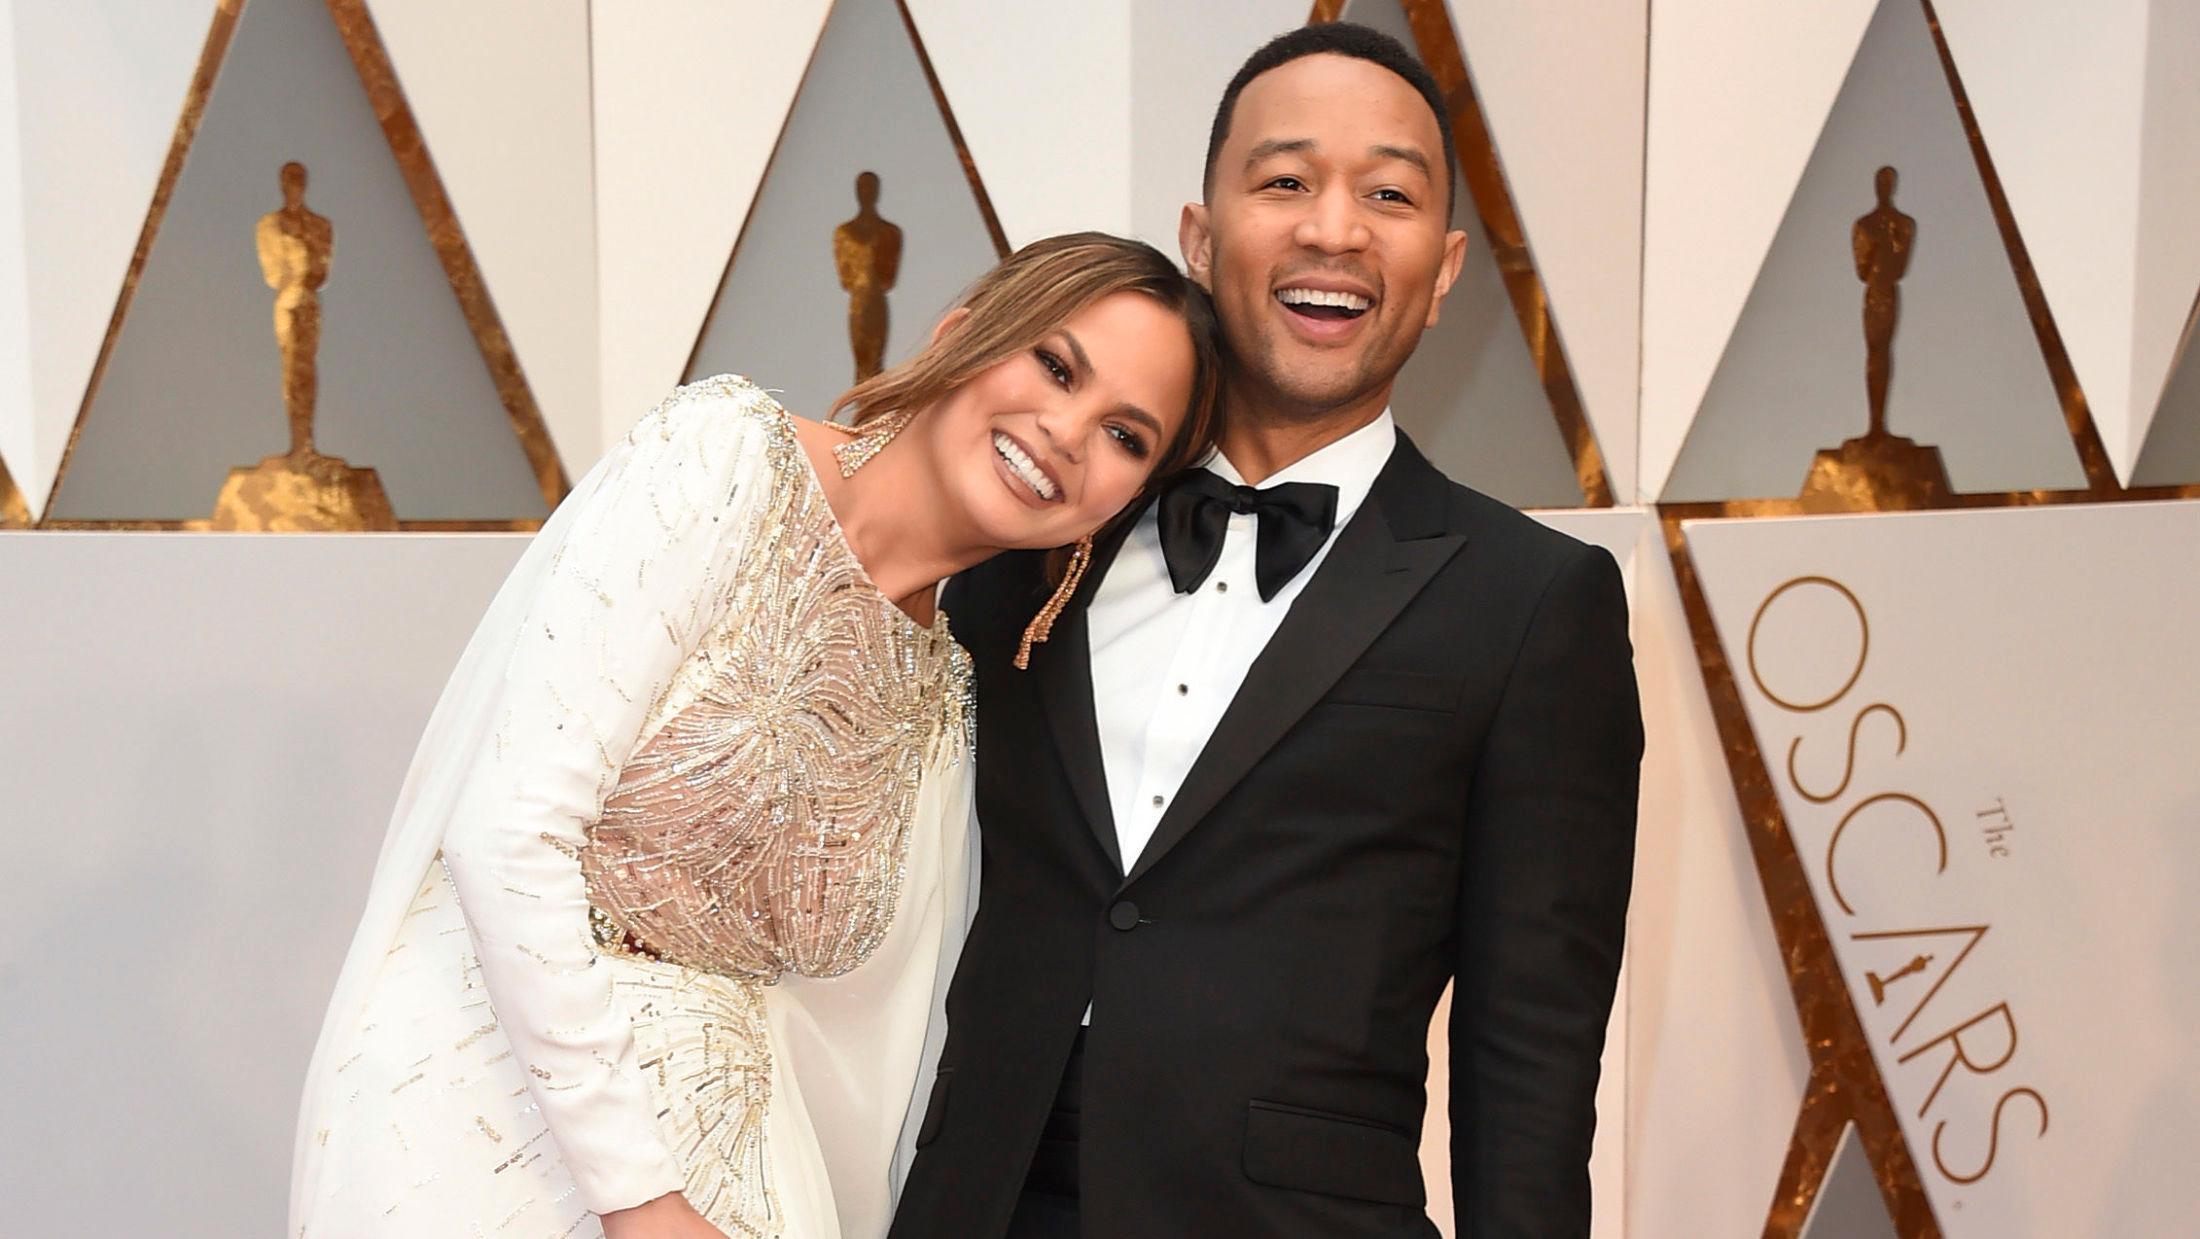 COUPLE GOALS: Internett hyller både Chrissy Teigen og ektemannen John Legend etter nattens Oscar-utdeling. Foto: NTB scanpix